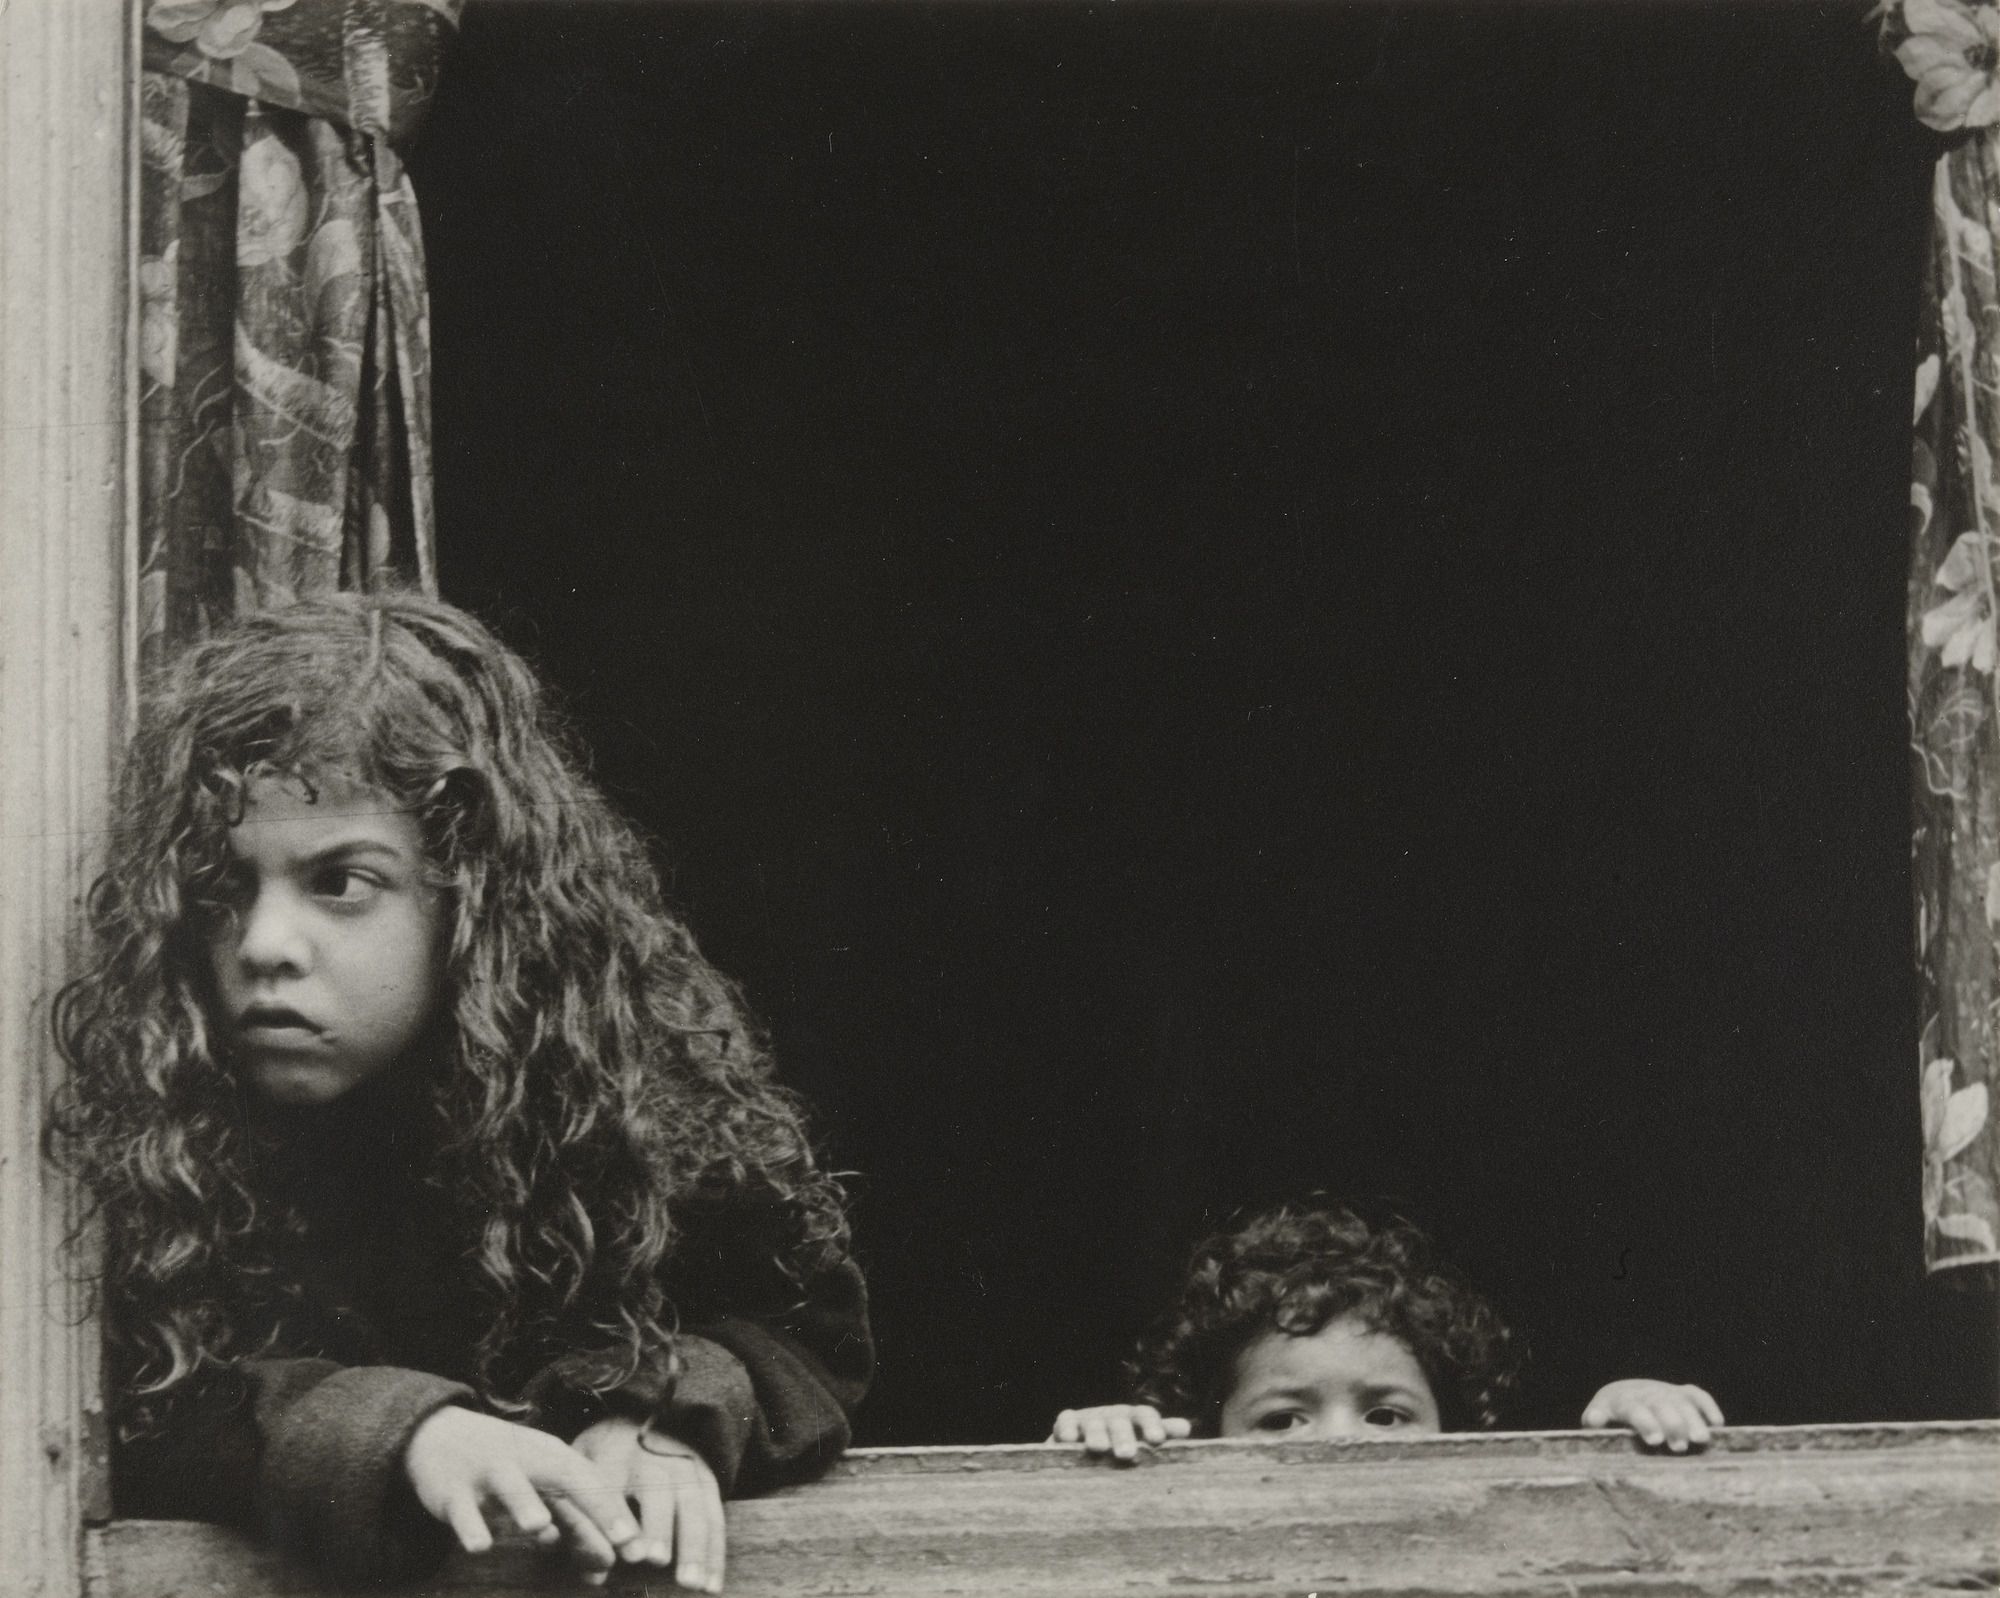 Helen Levitt New York 2 (1971-4) ©MoMA, New York